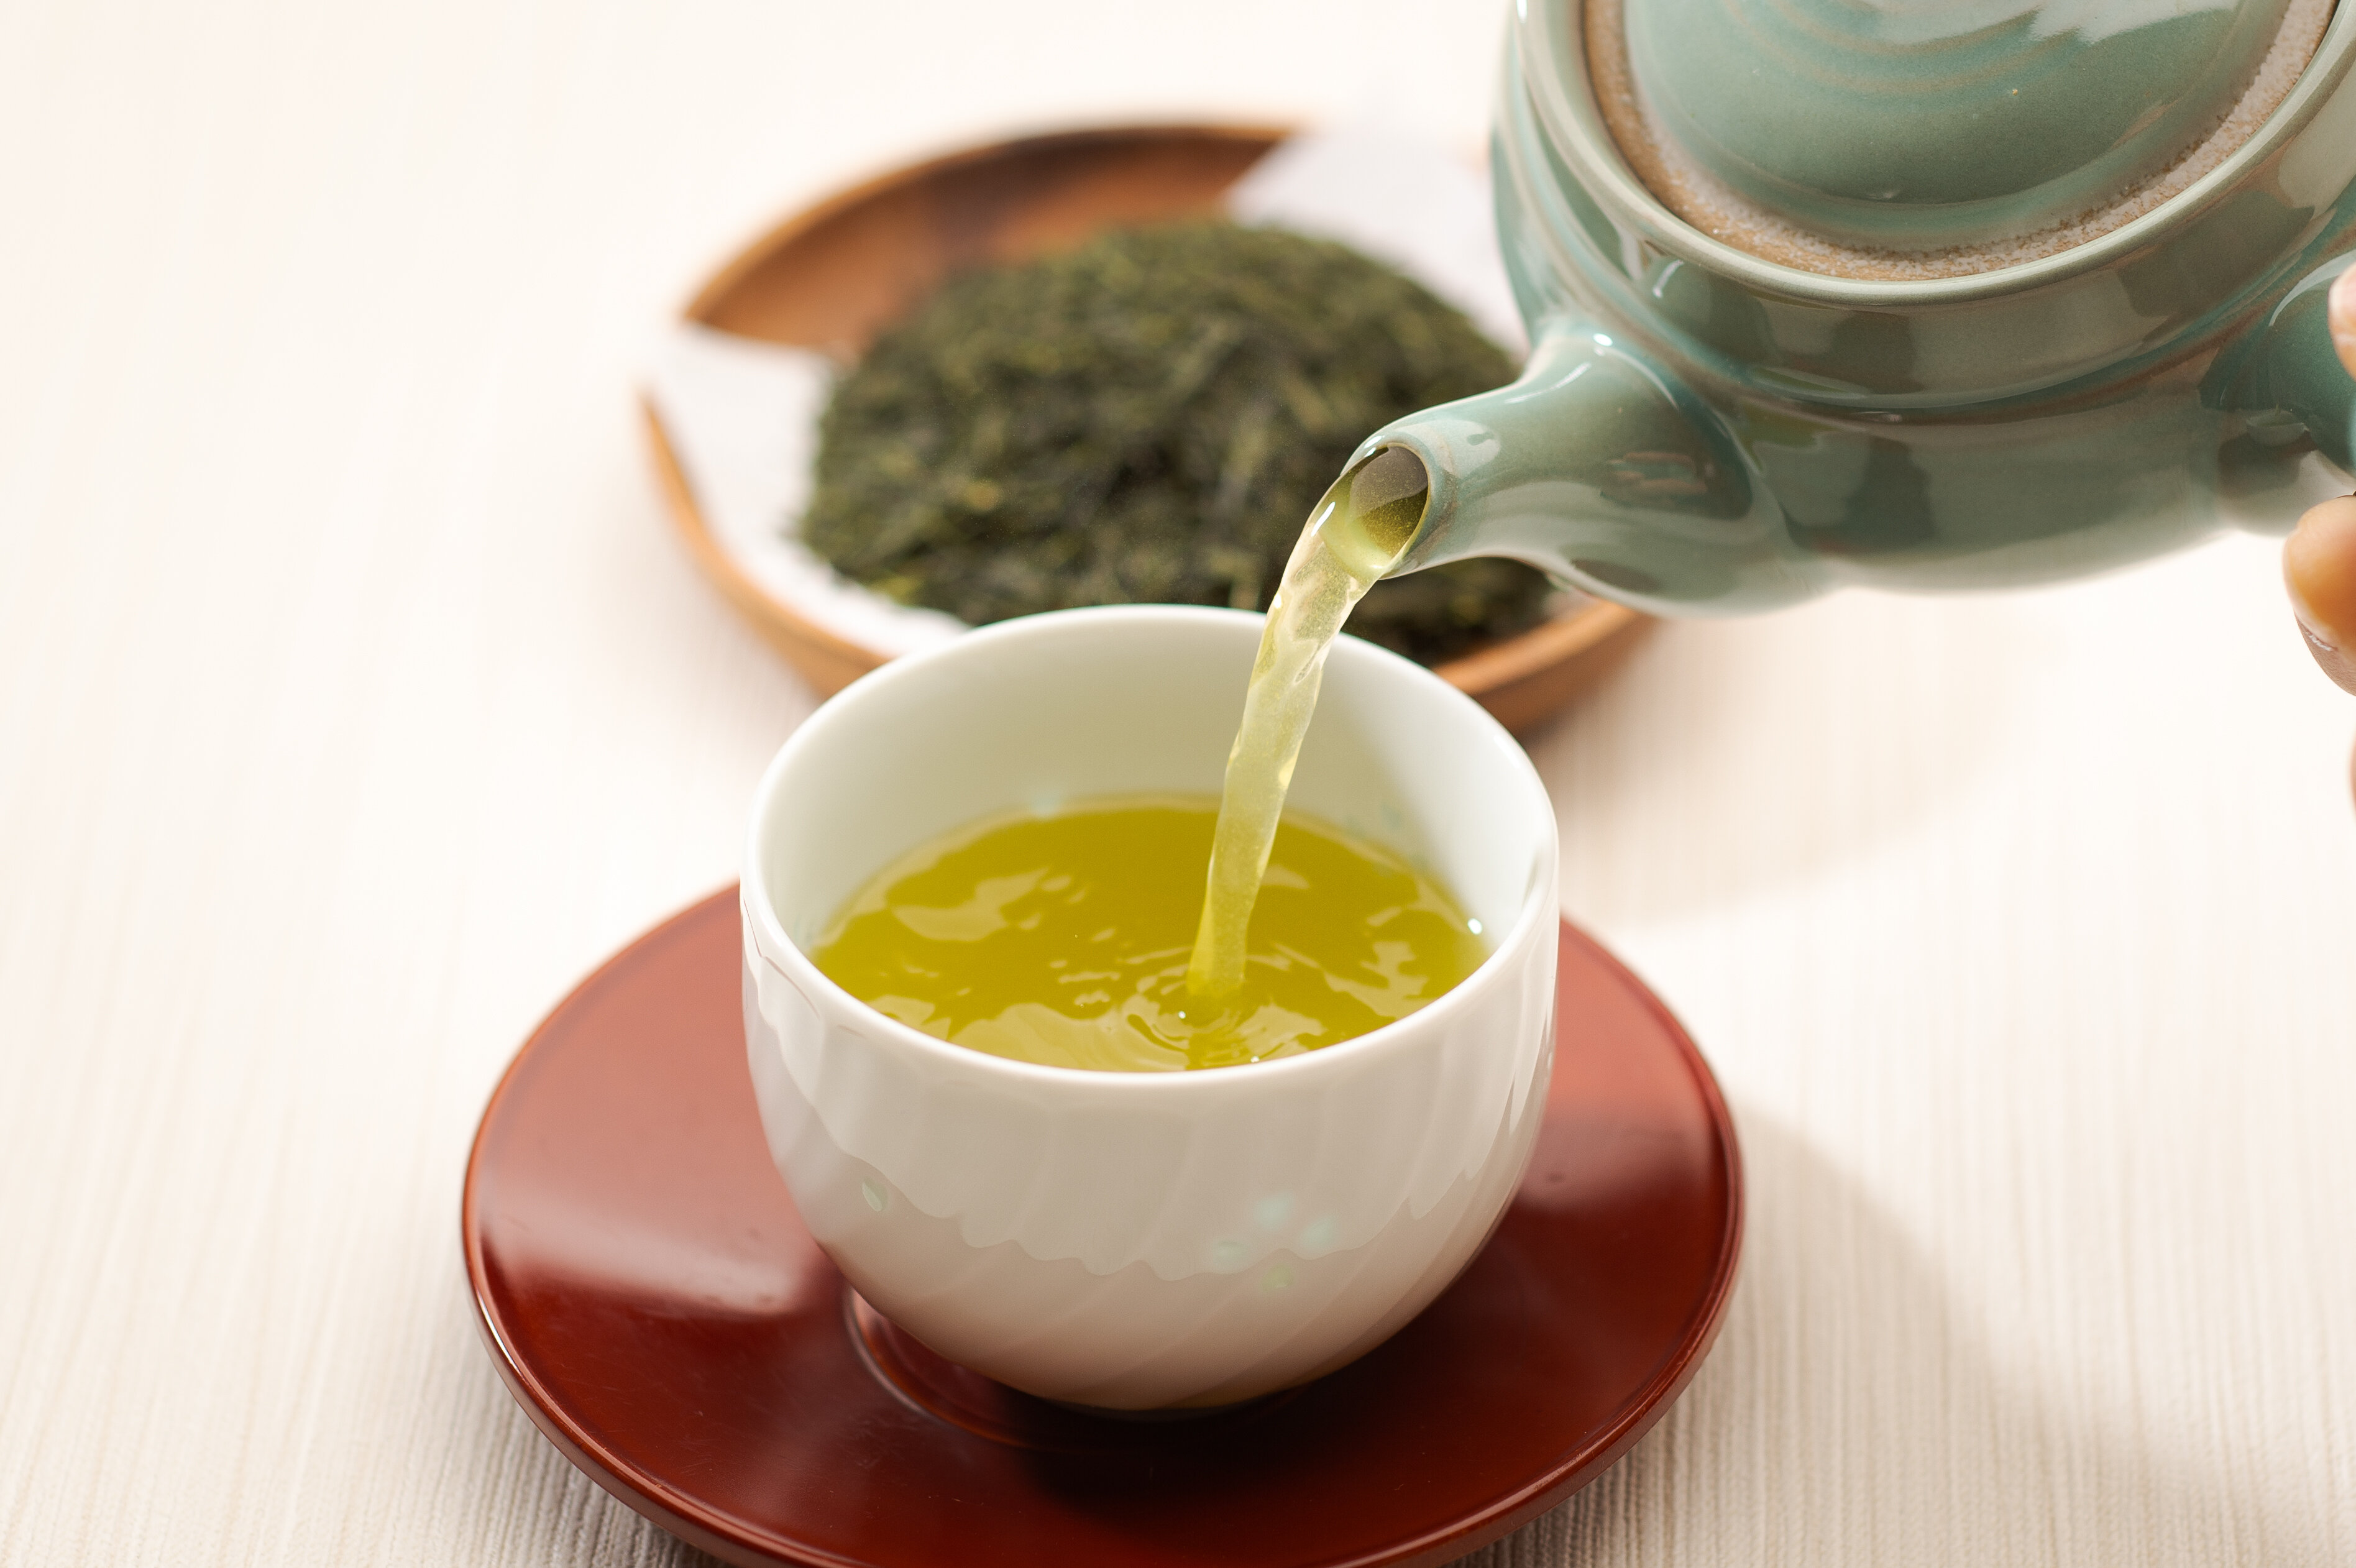 【特産品】G7広島サミットで三重県から唯一「大台茶」が選ばれた理由